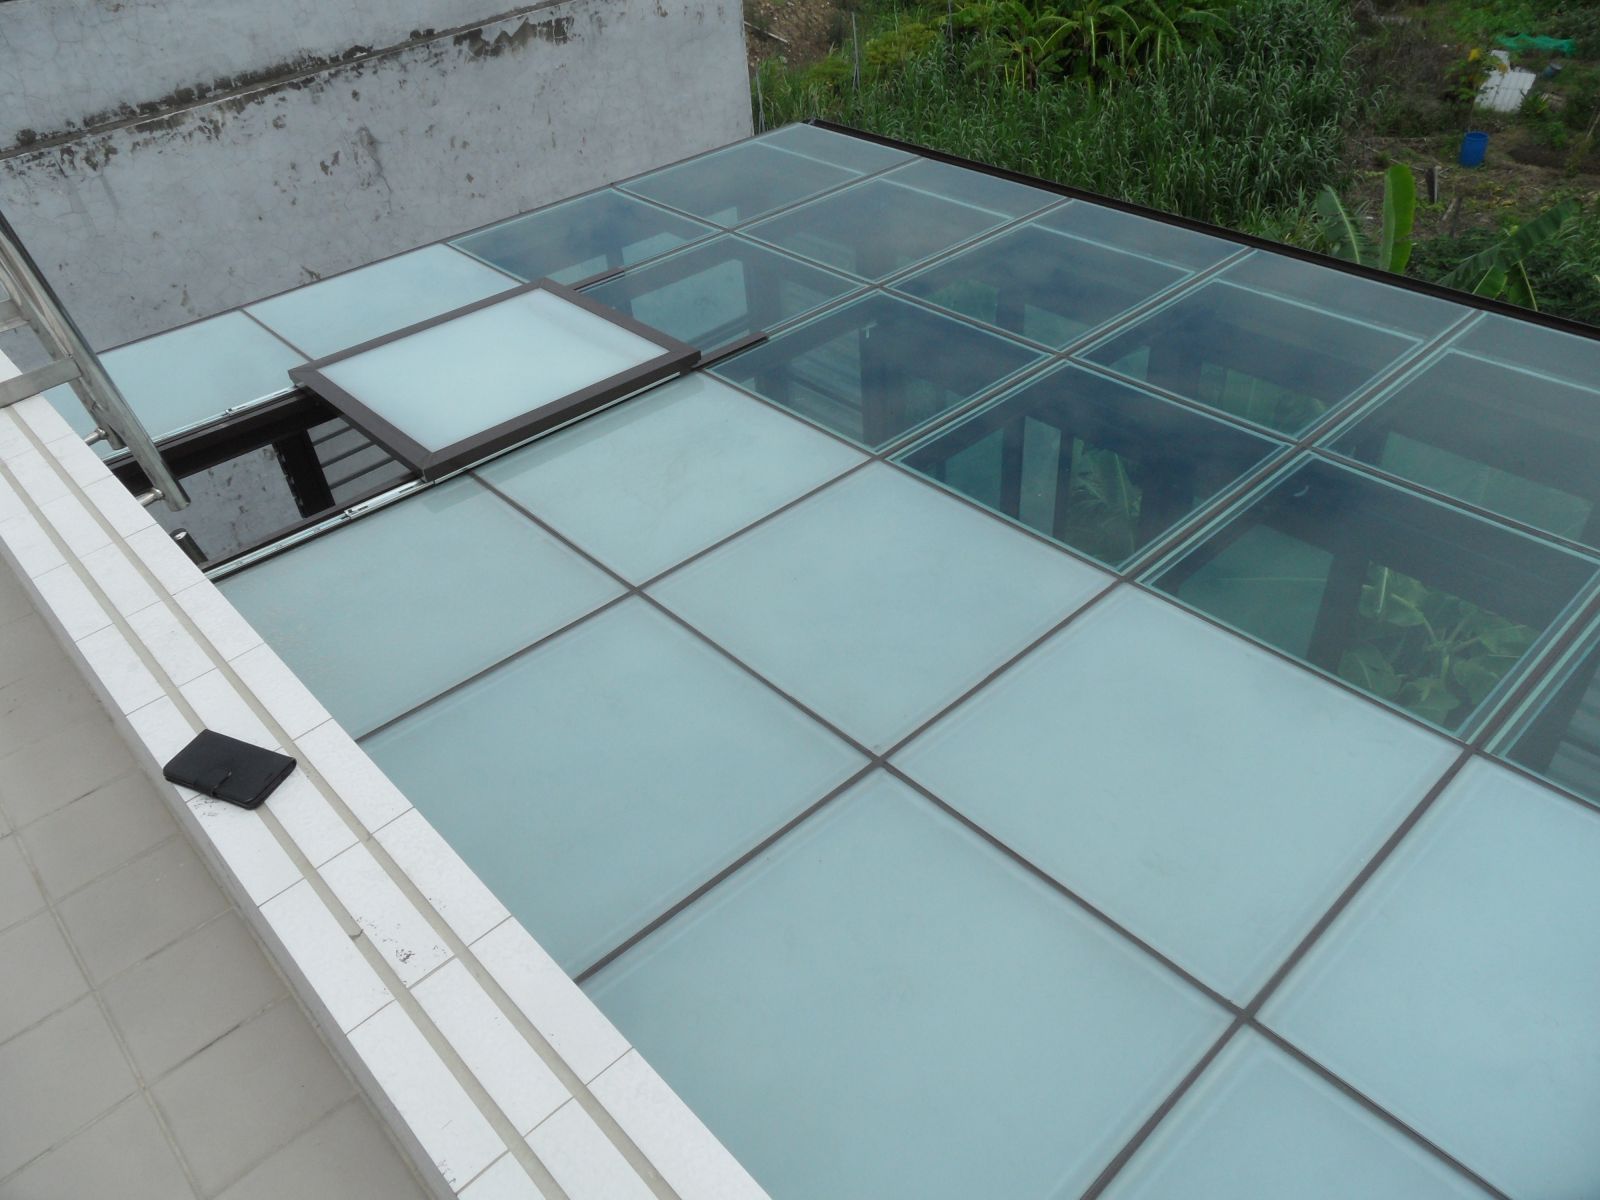 屋頂玻璃採用5+5膠合玻璃,1/2為為遮陽區.1/2為透光區(晾衣區)